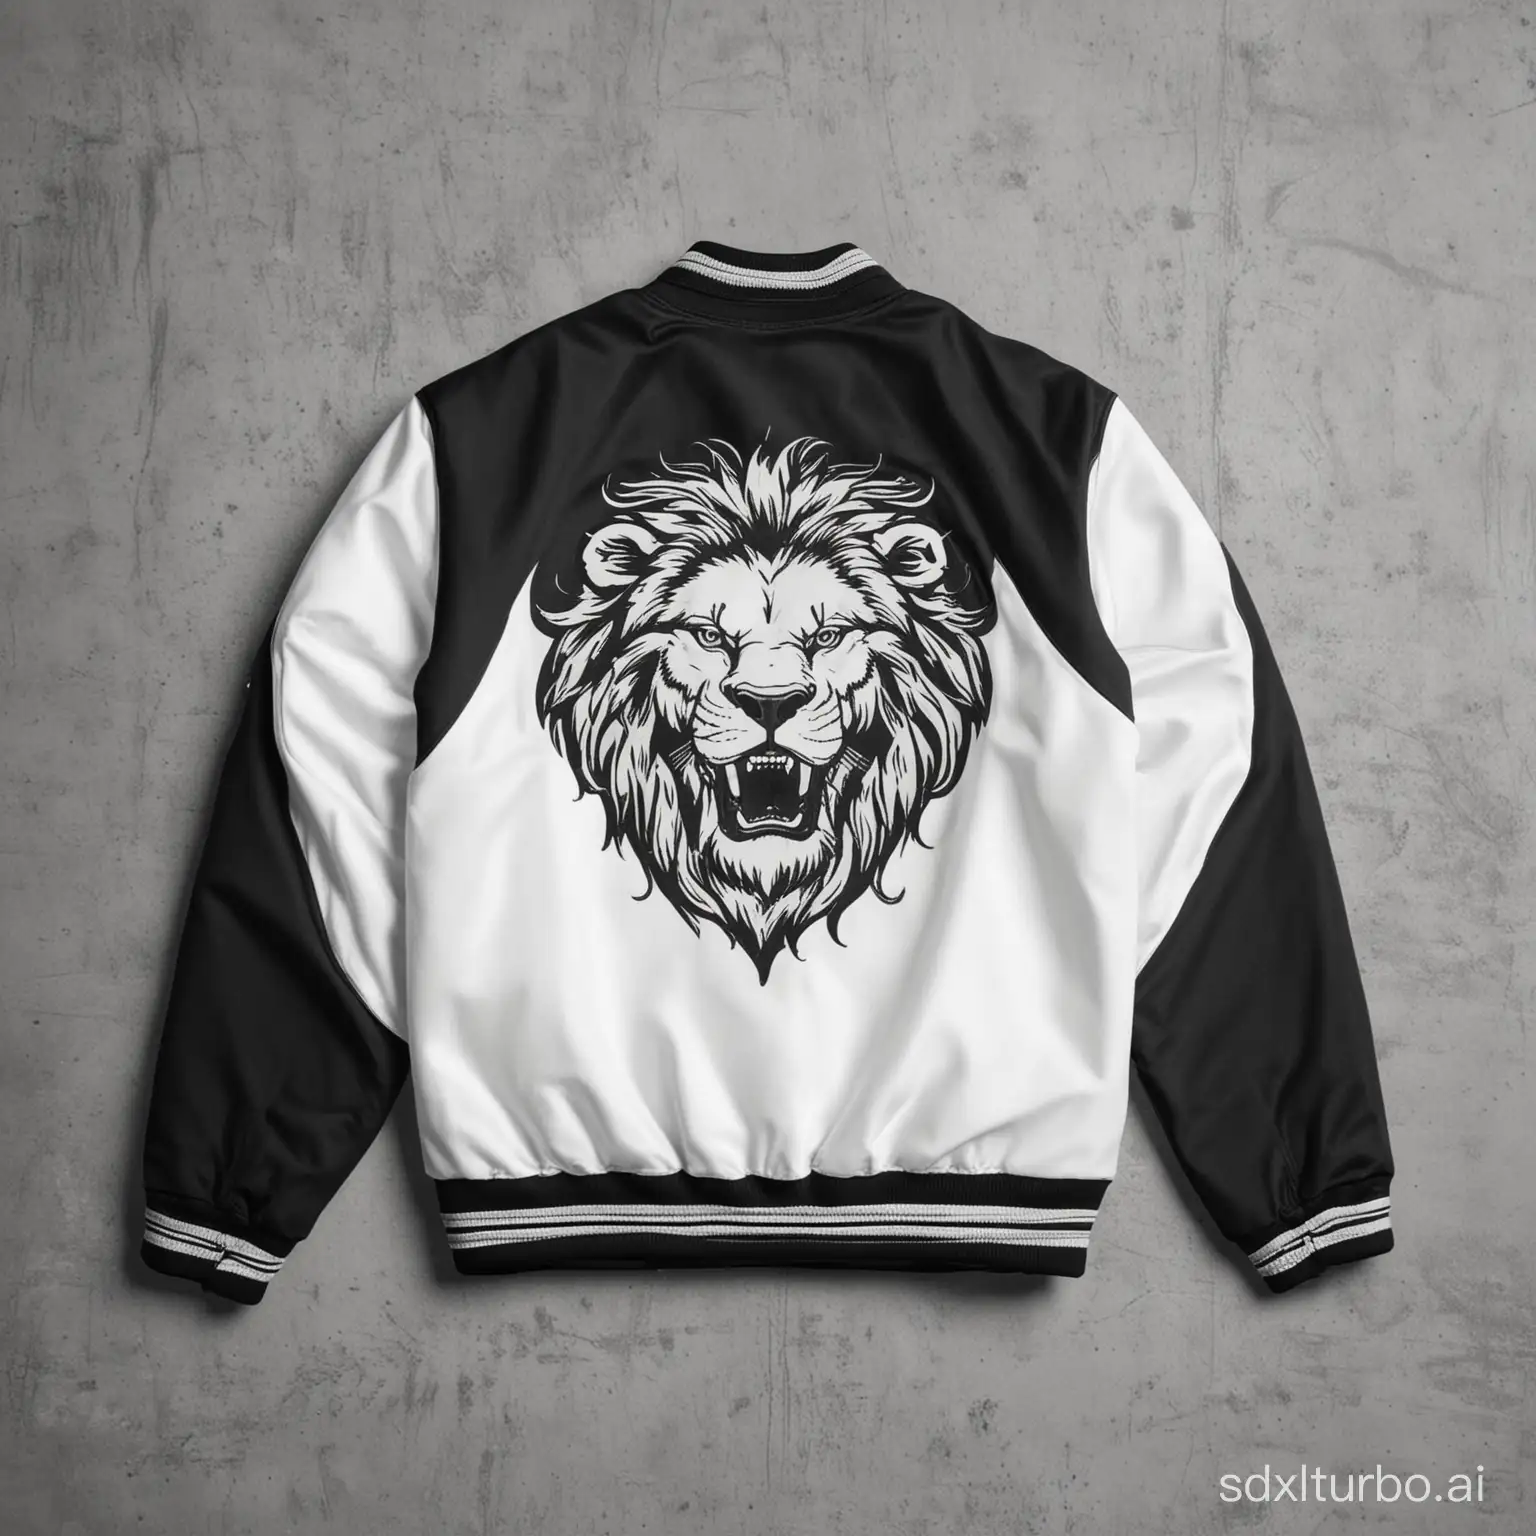 Black-and-White-Varsity-Jacket-with-Lion-Logo